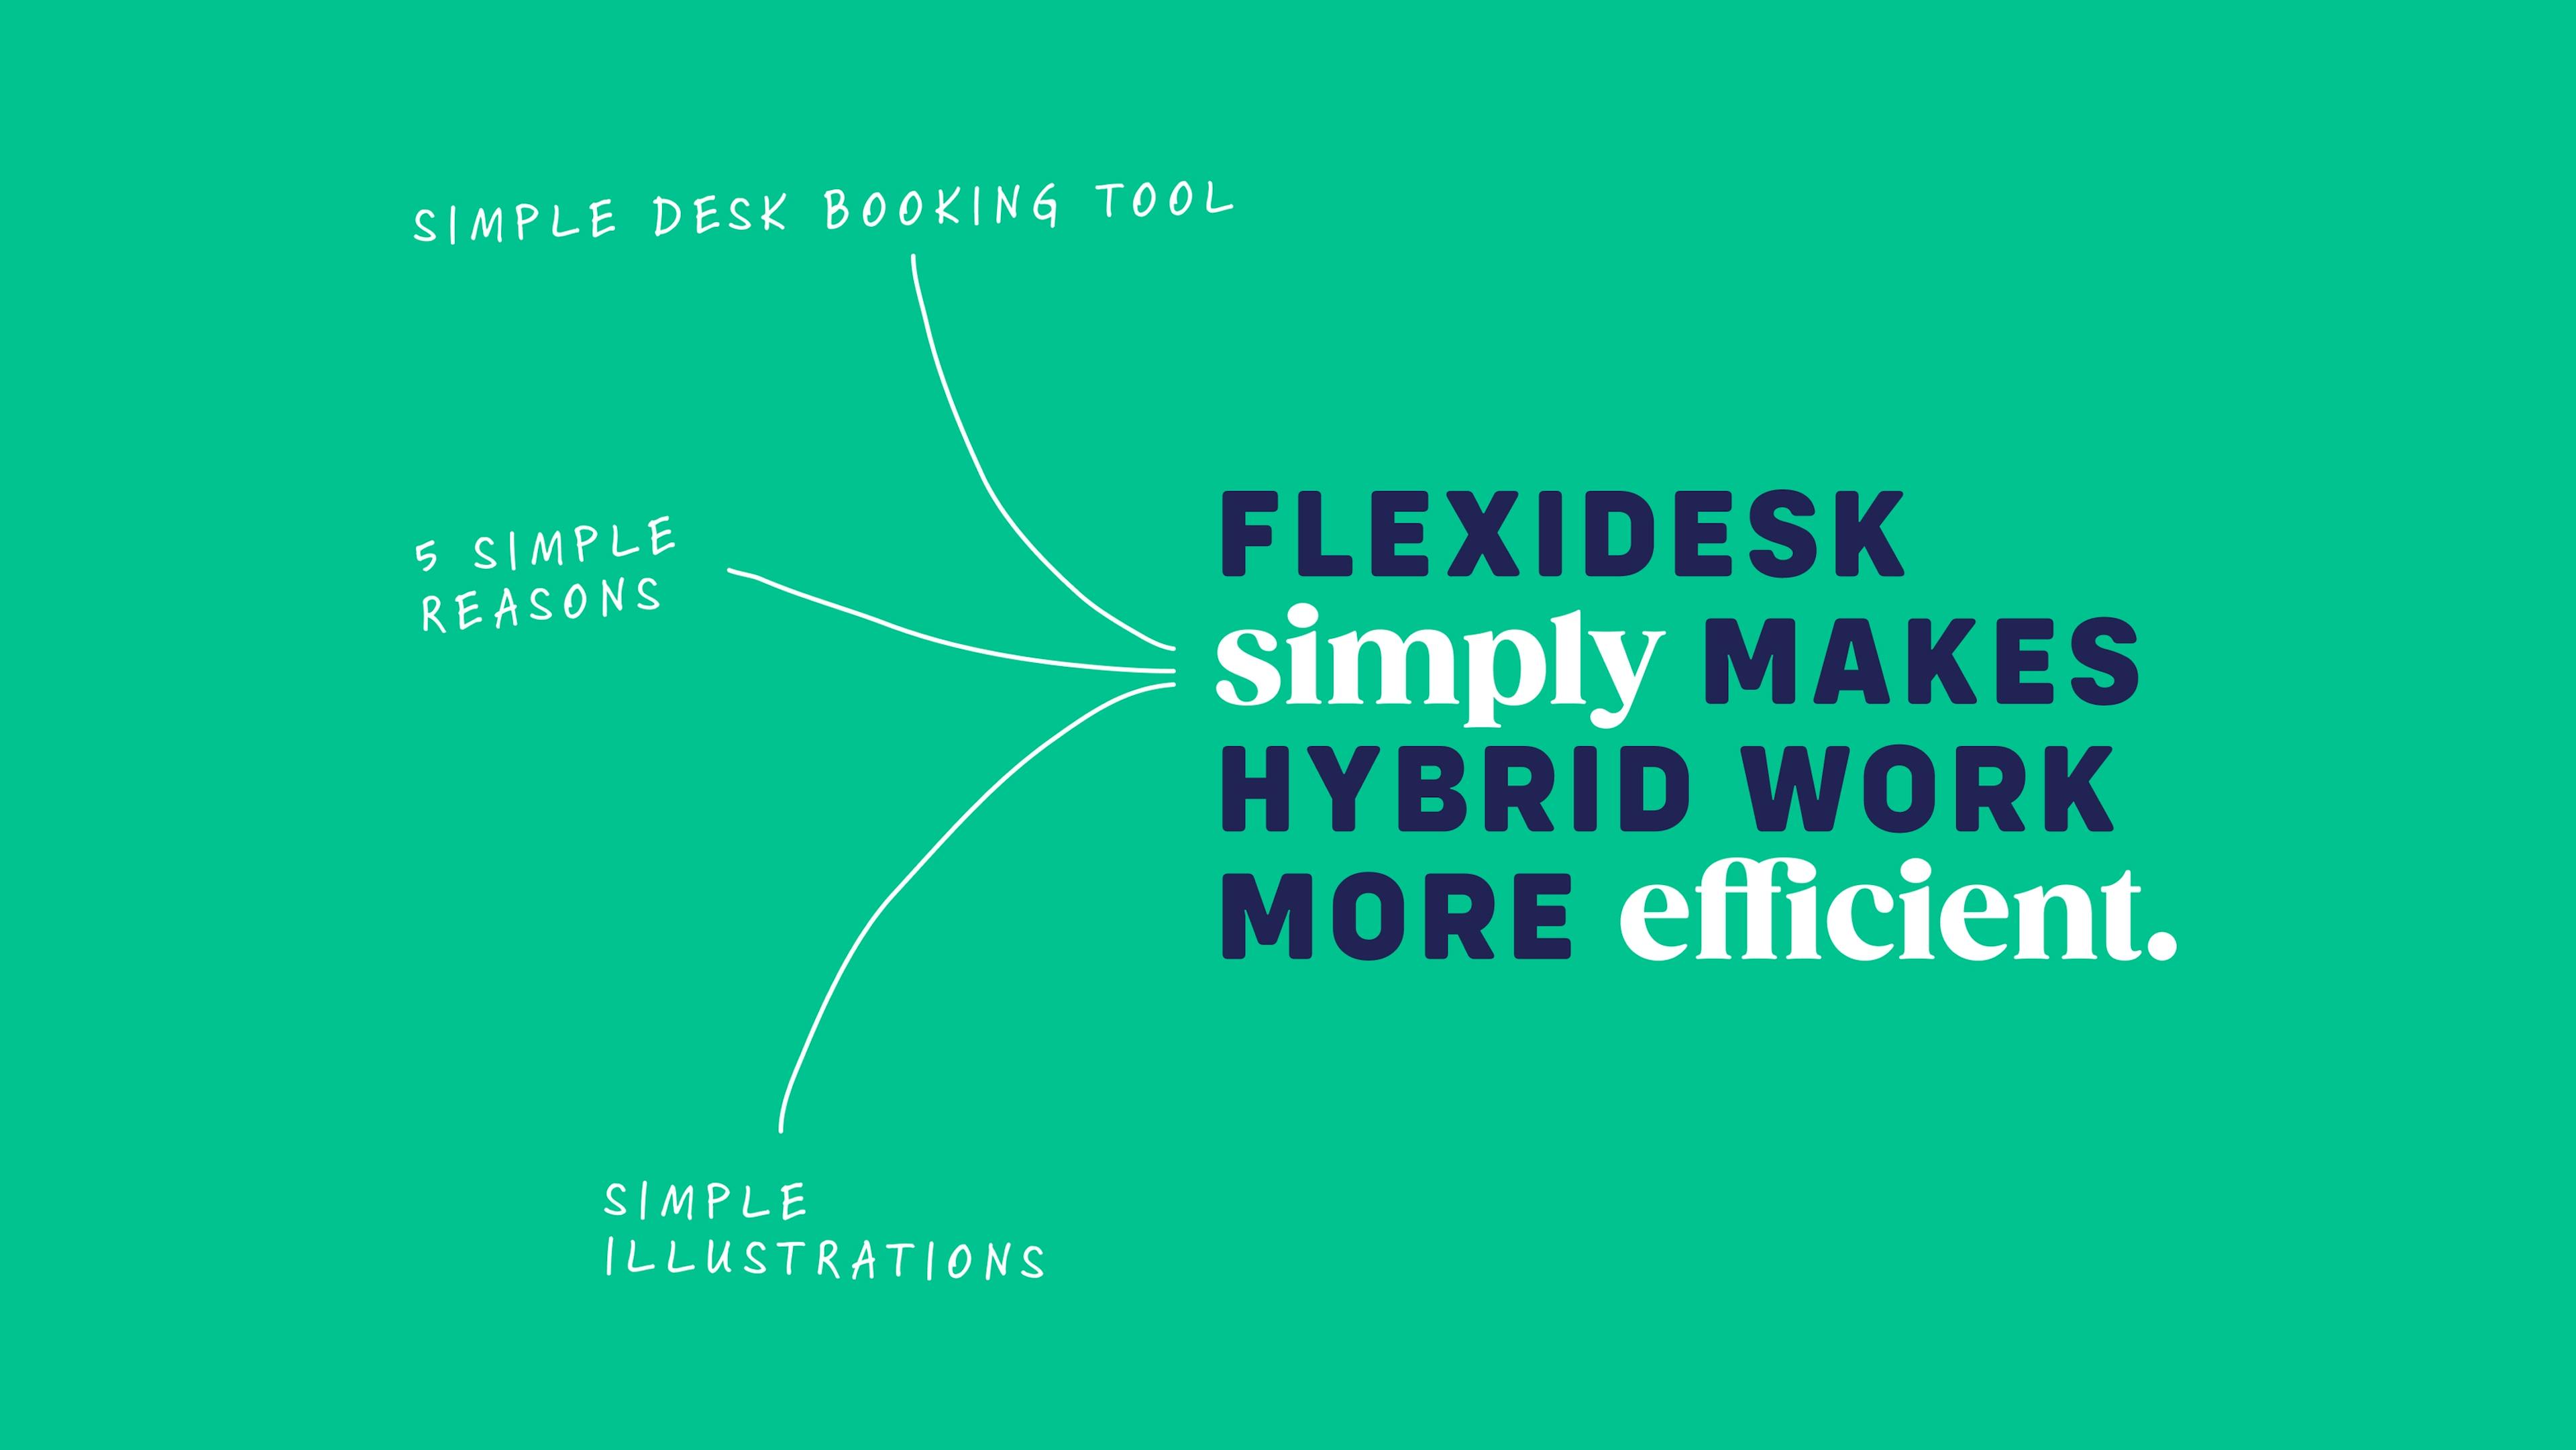 Flexidesk ist einfach – das spiegelt sich in den 5 einfachen Gründen für Flexidesk sowie im Illustrationsstil wieder © good matters